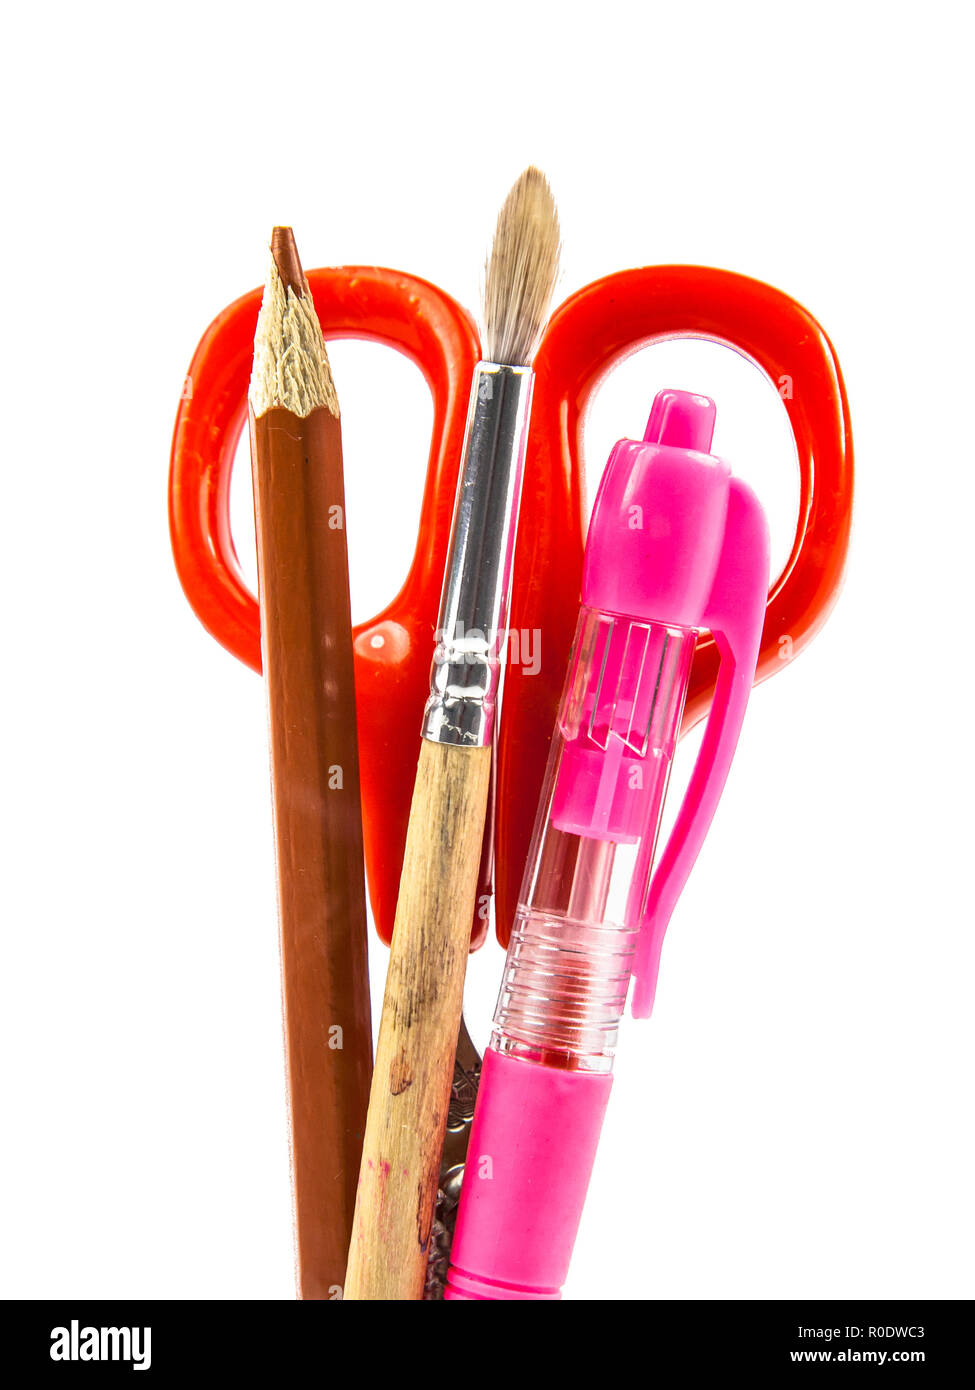 Schere, Stift, Pinsel und Bleistift Büro-utensilien mit Freistellungspfad  Stockfotografie - Alamy